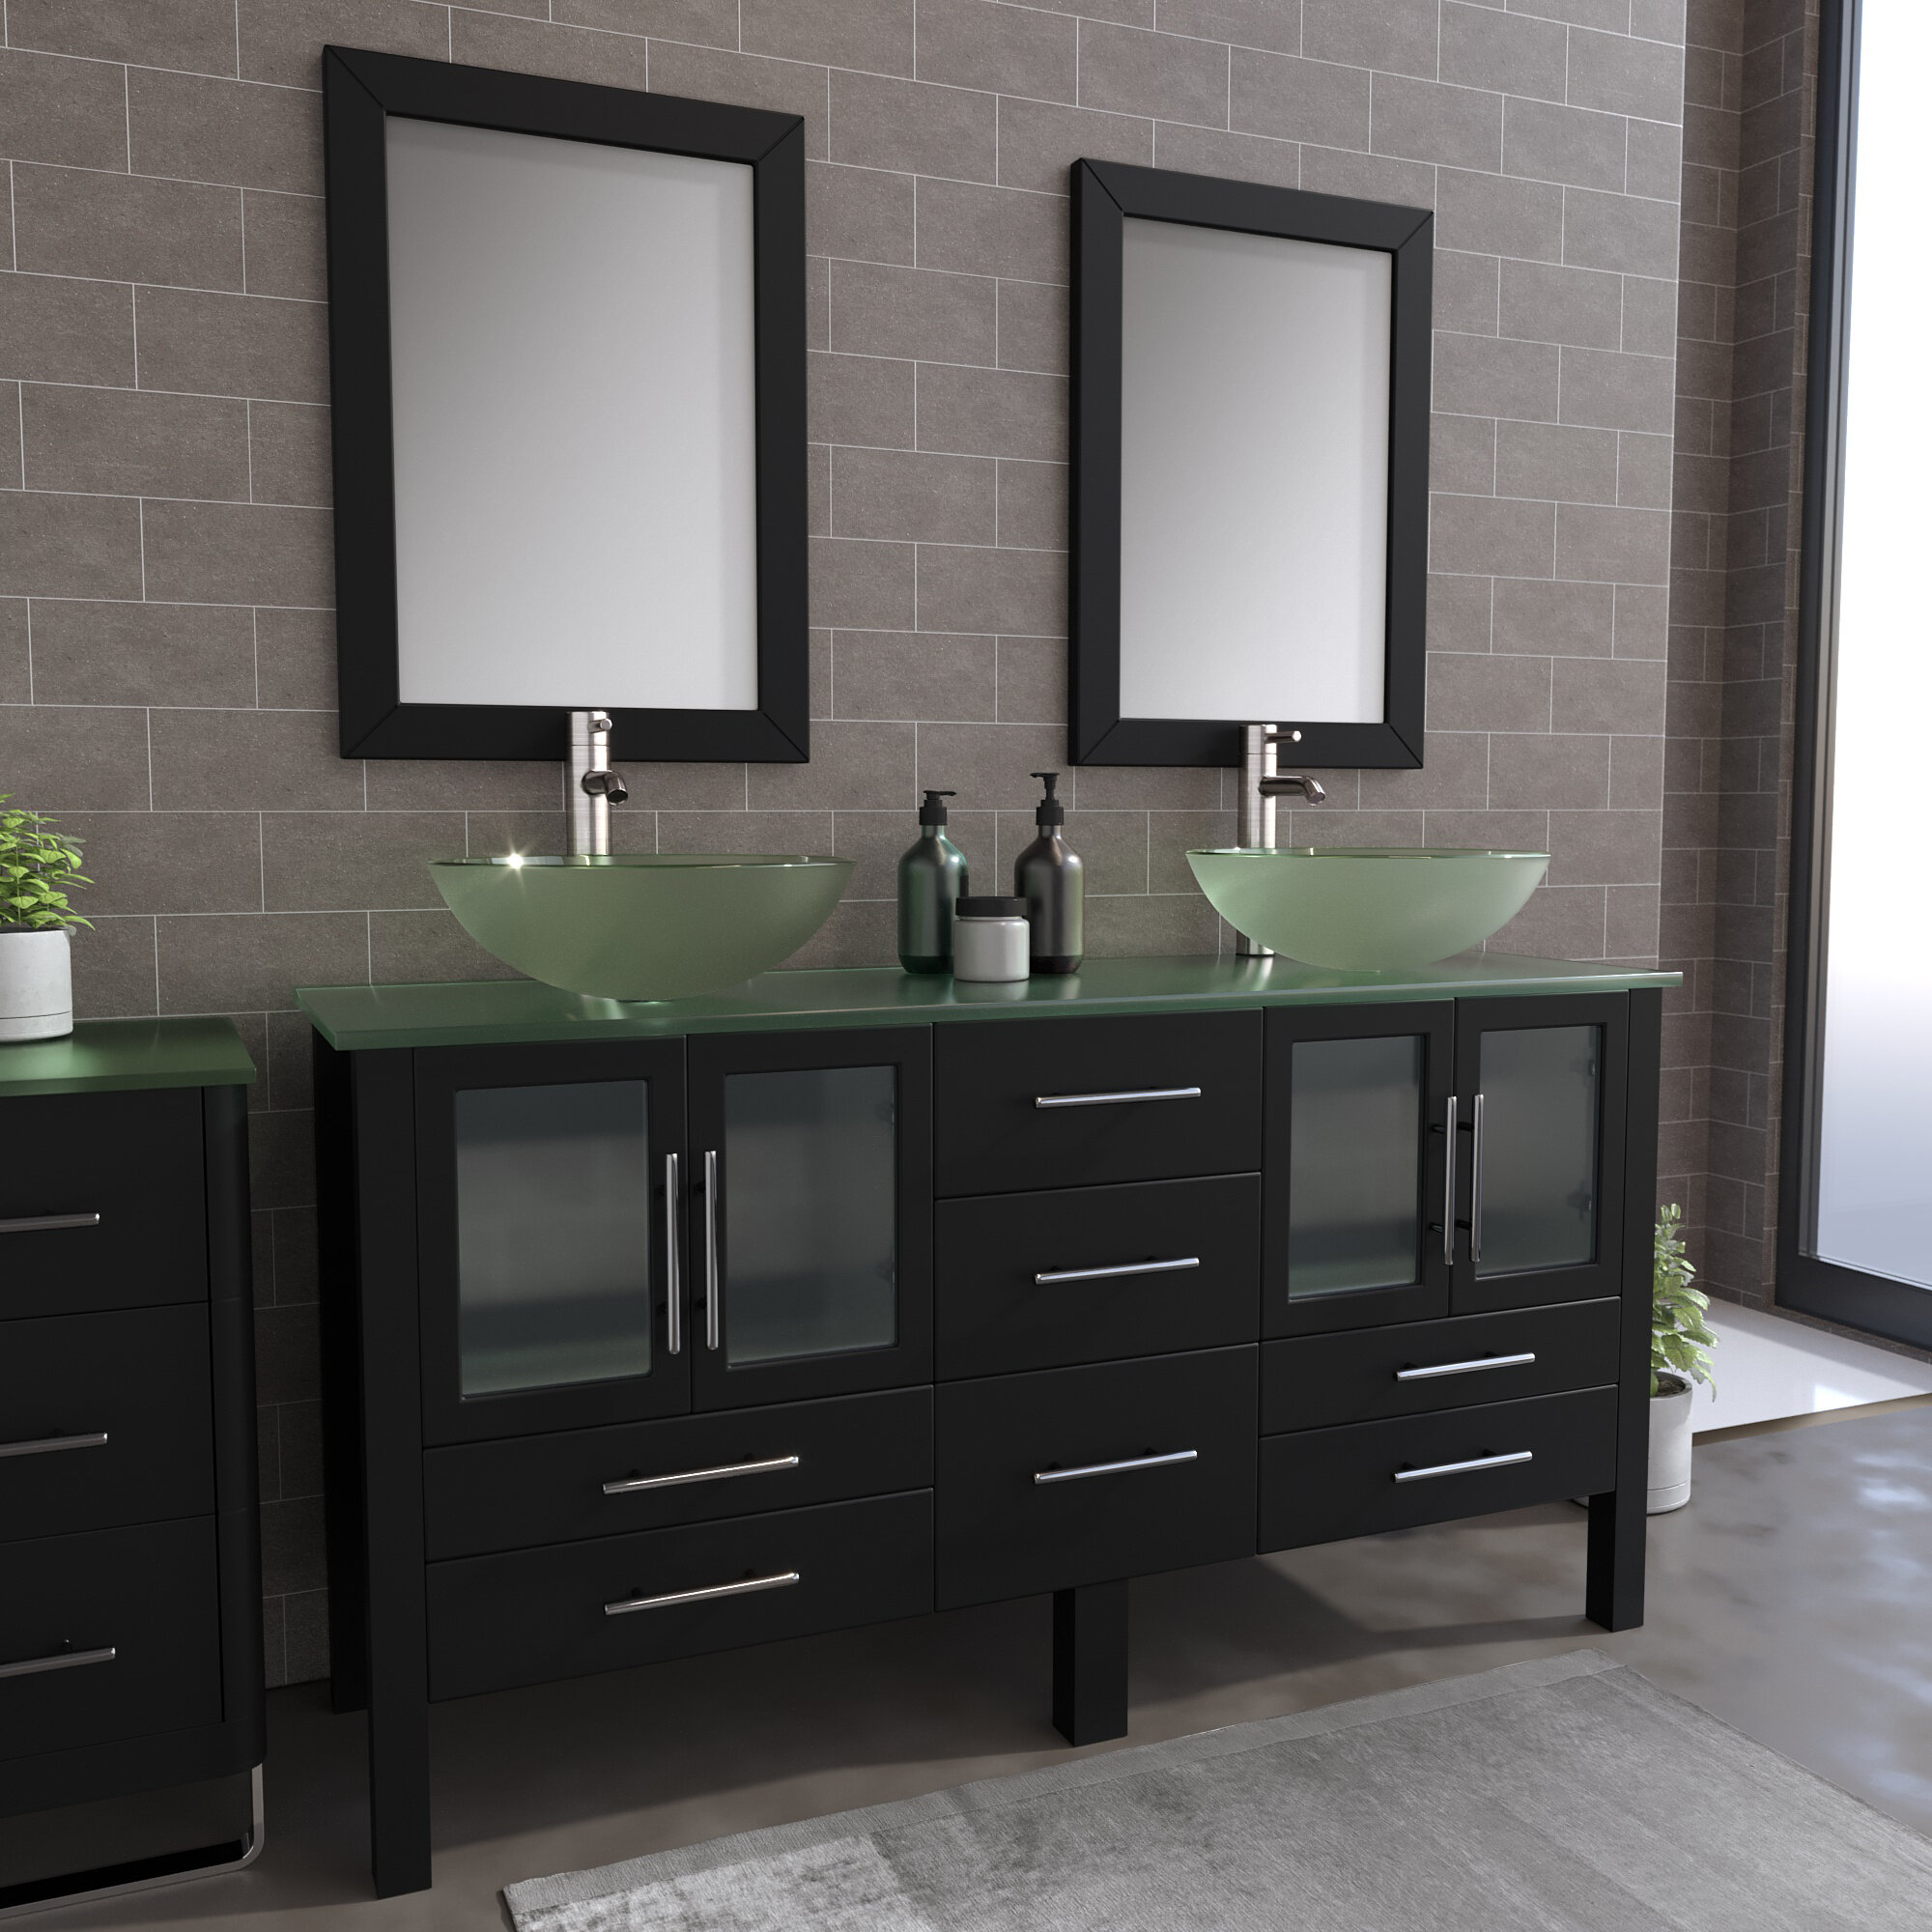 Brayden Studio Meserve Solid Wood And Glass Vessel 64 Double Bathroom Vanity Set With Mirror Wayfair